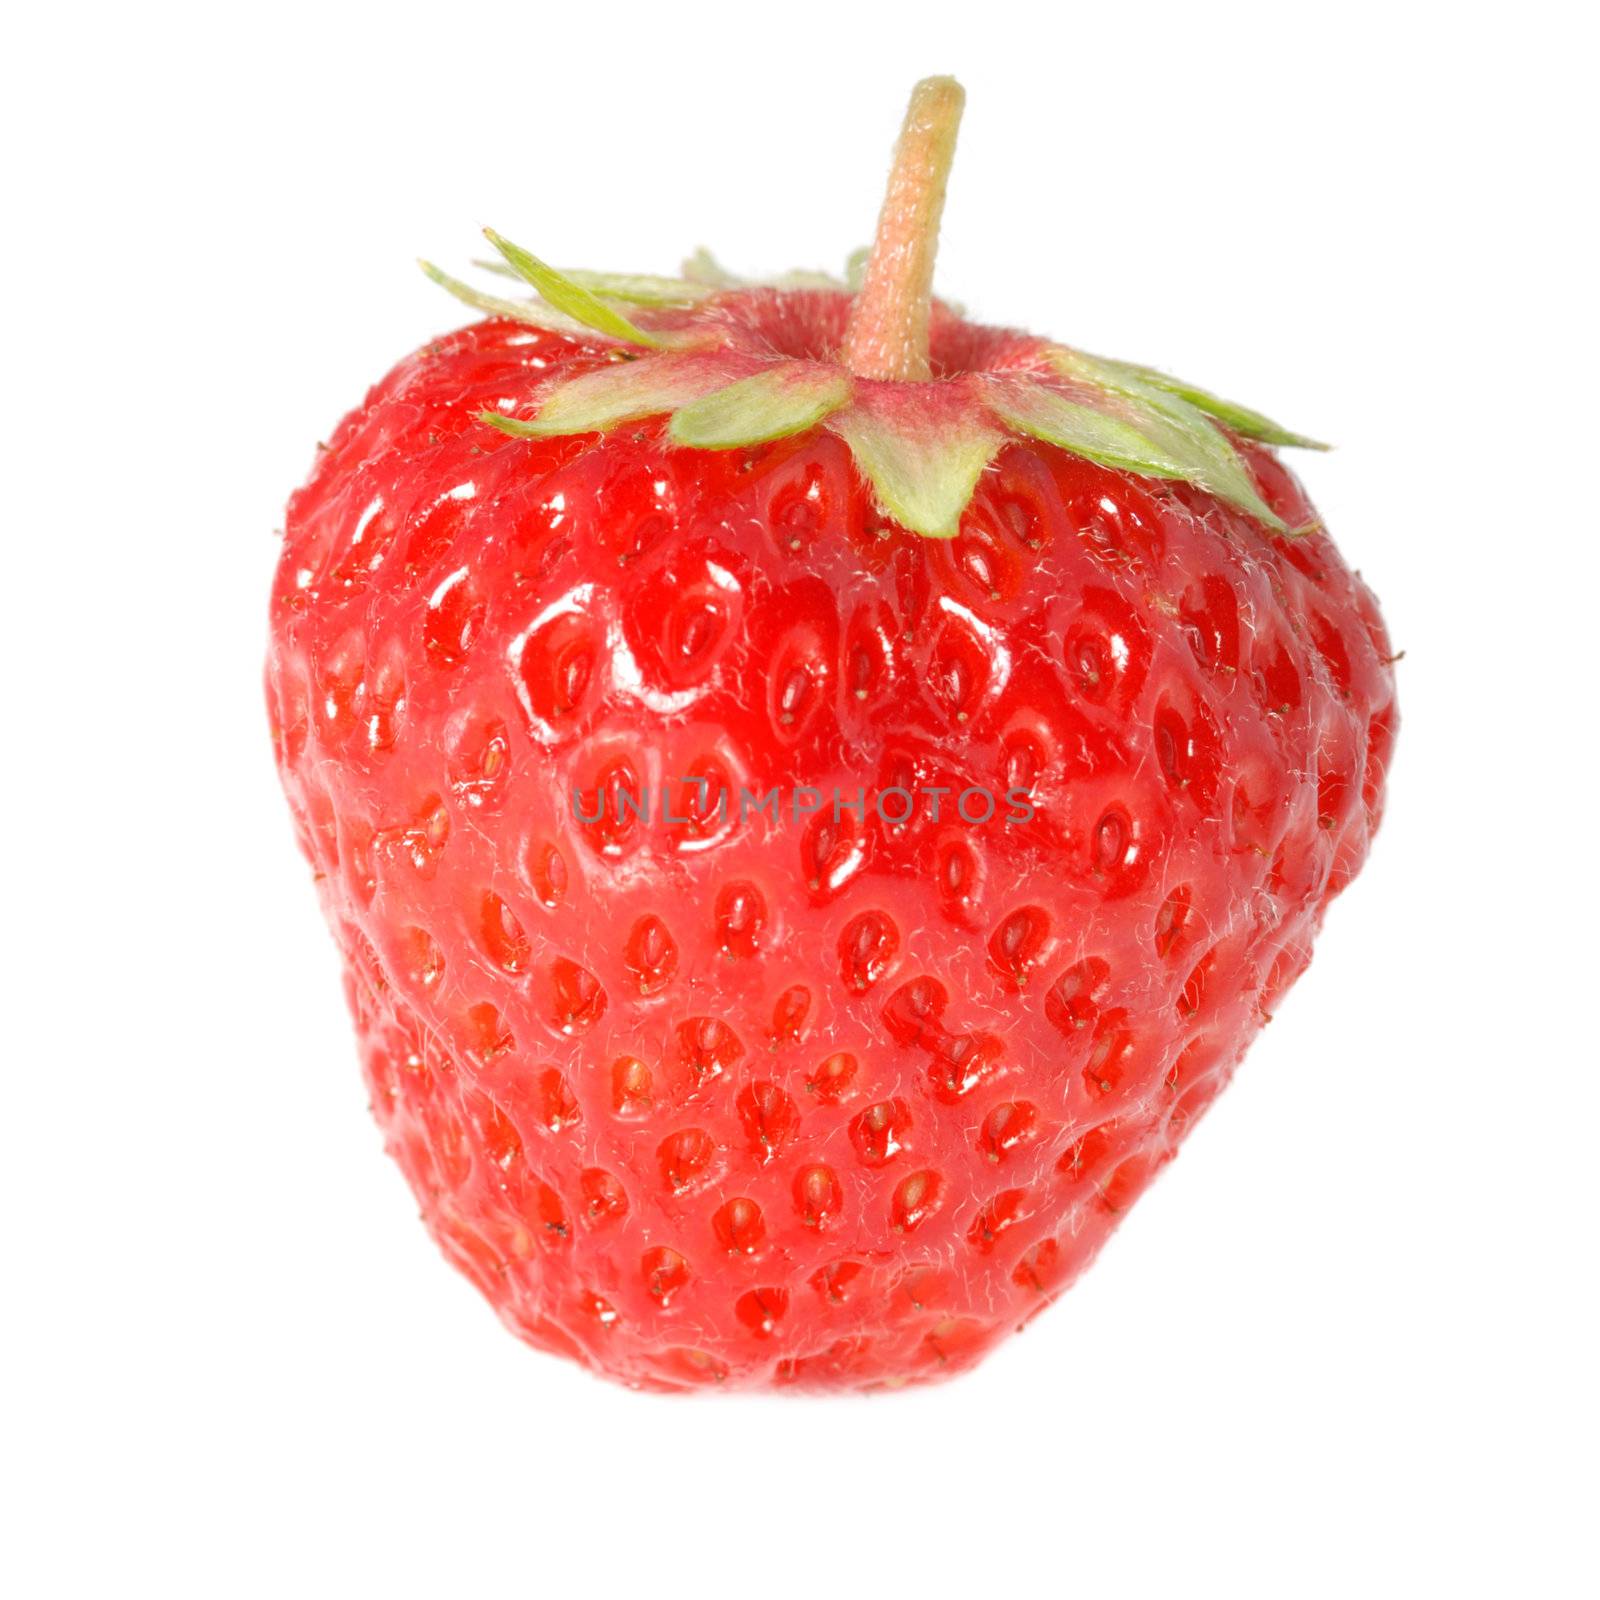 Strawberry by galdzer